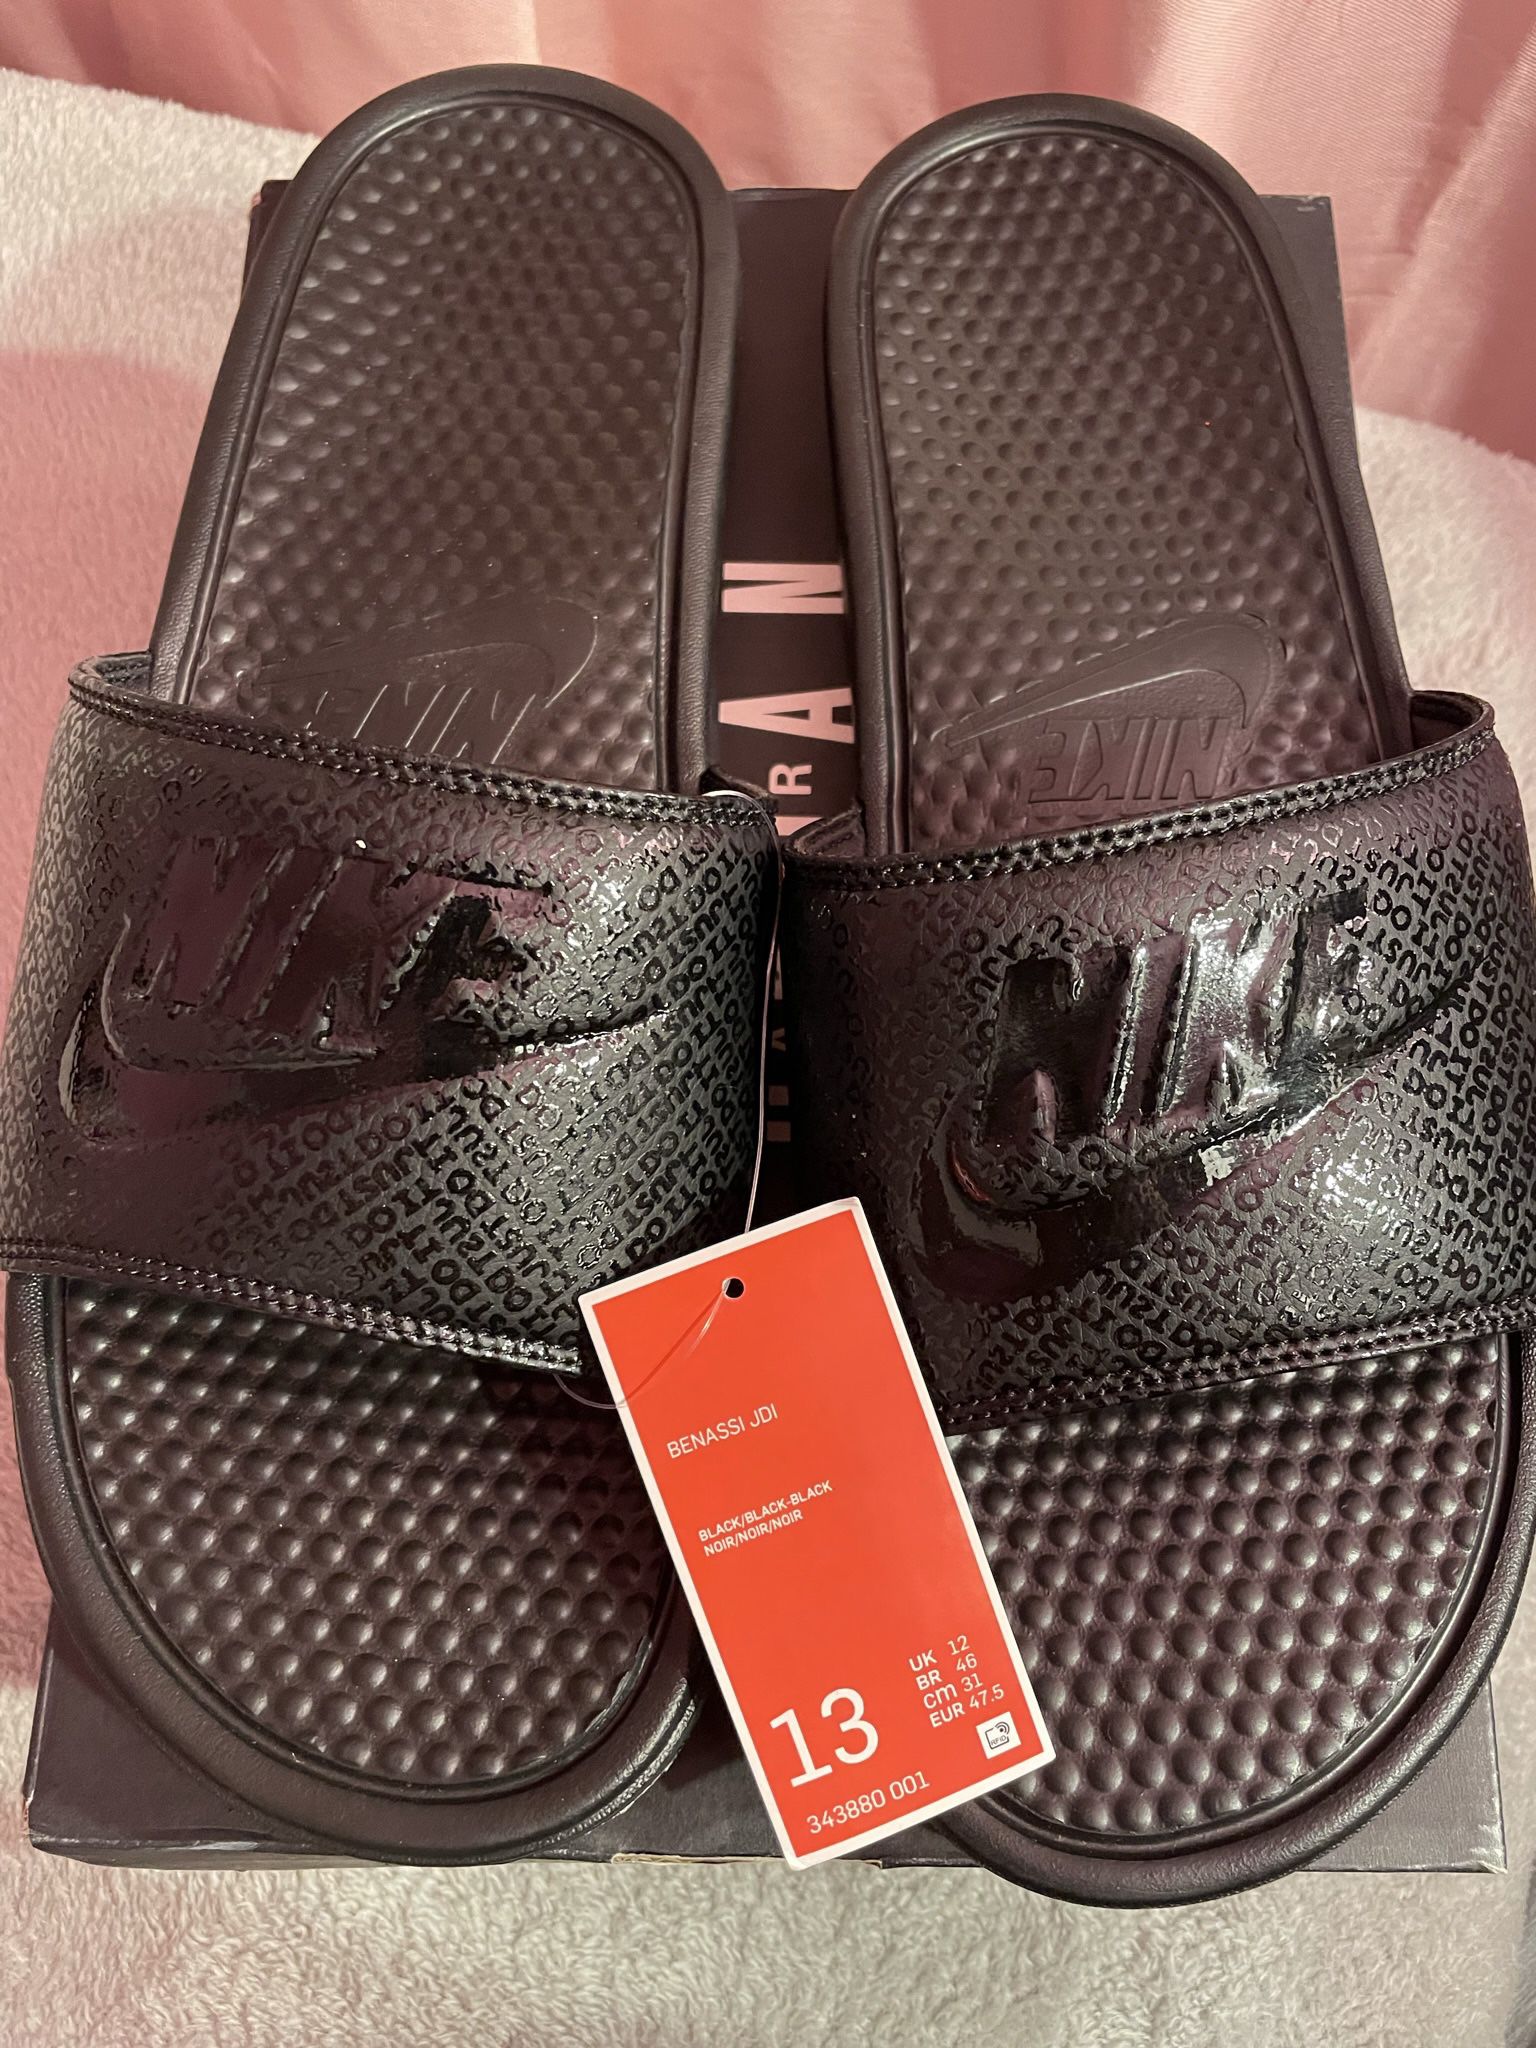 Nike Men's Sandals Slippers Slides Flip Flops Blk Size 13